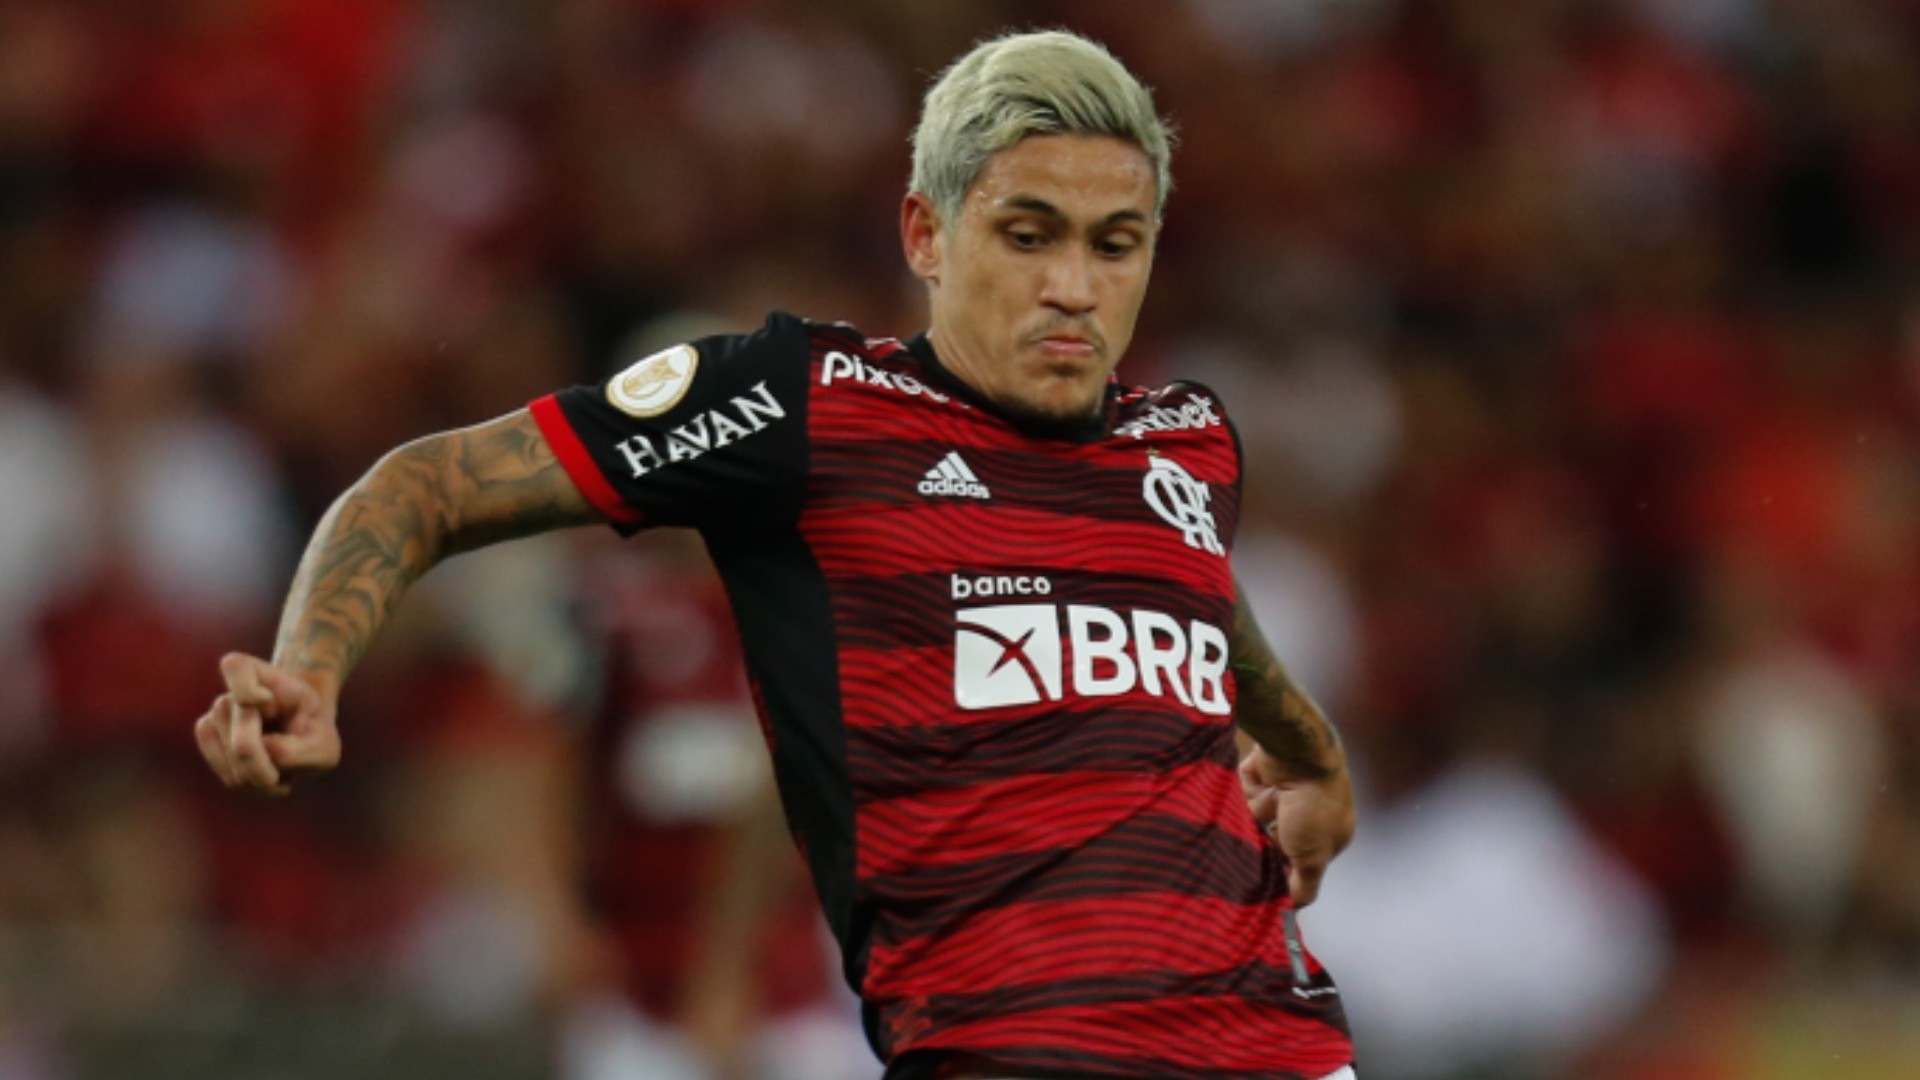 Diretoria do Flamengo avalia ouvir propostas para vender Pedro. Goal.com Brasil